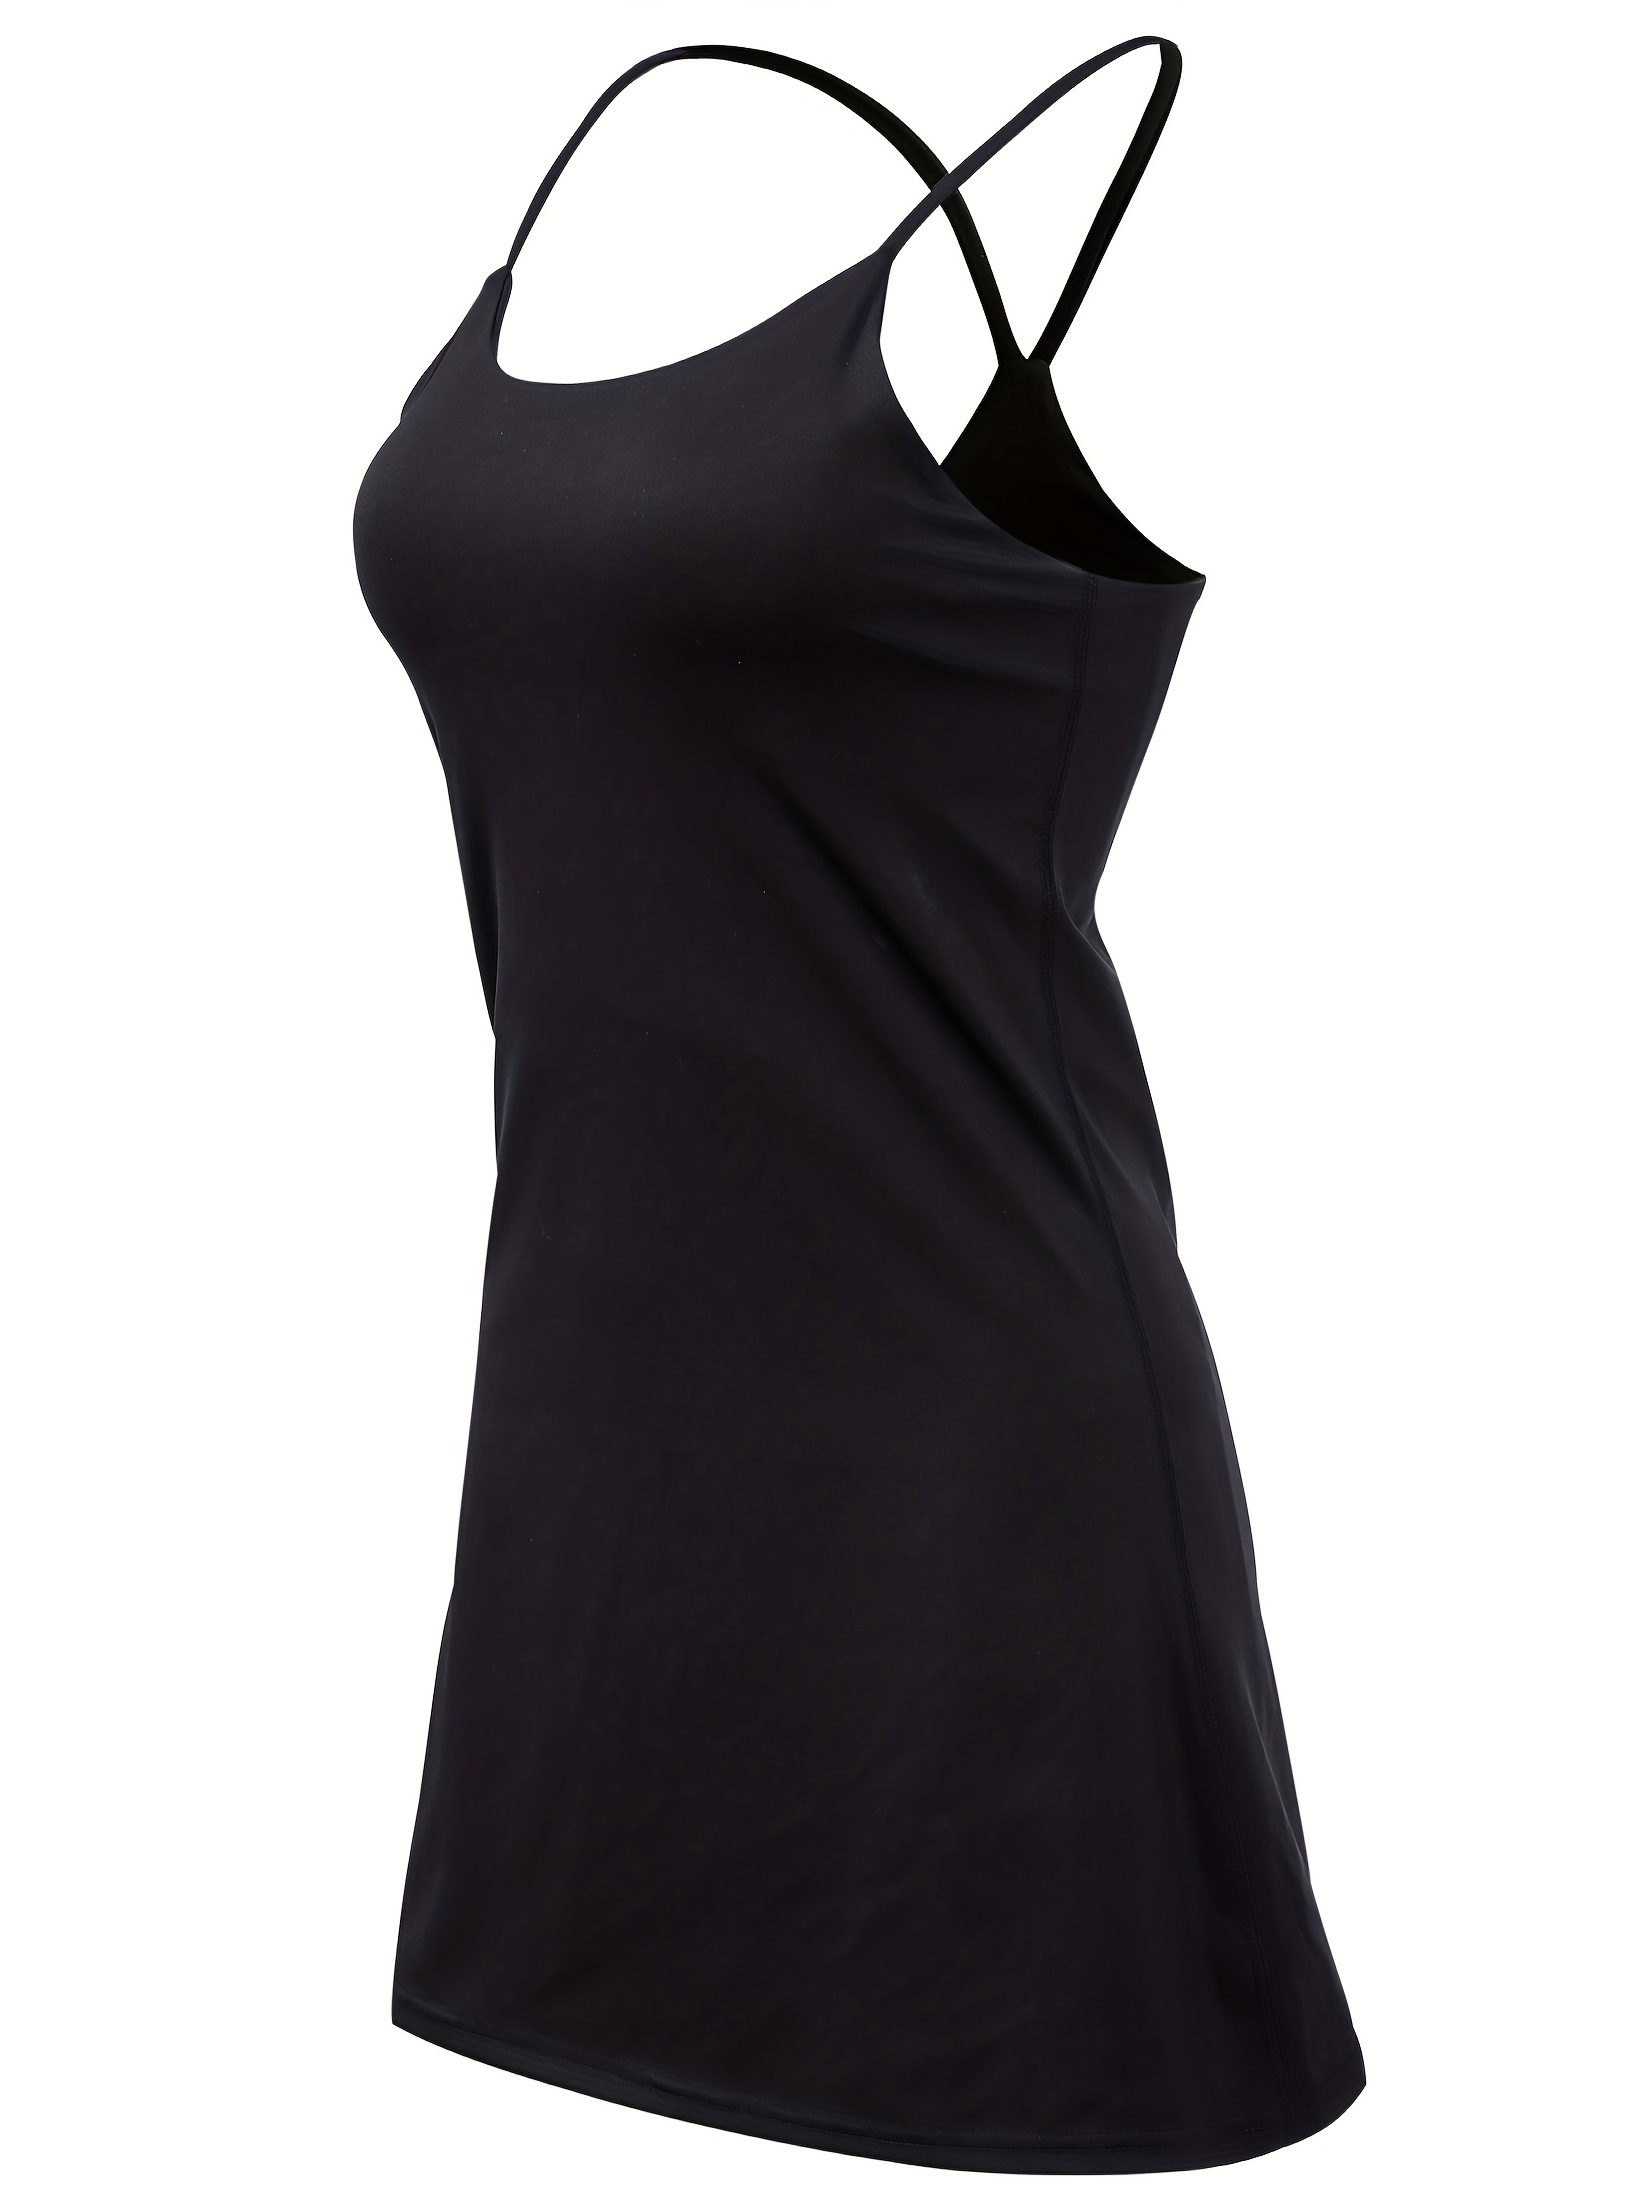 Women Tennis Dress with Built in Bra Shorts Workout Dress Exercise Dress  Golf Athletic Dresses for Women Slip Dress Skirt, Black, Medium